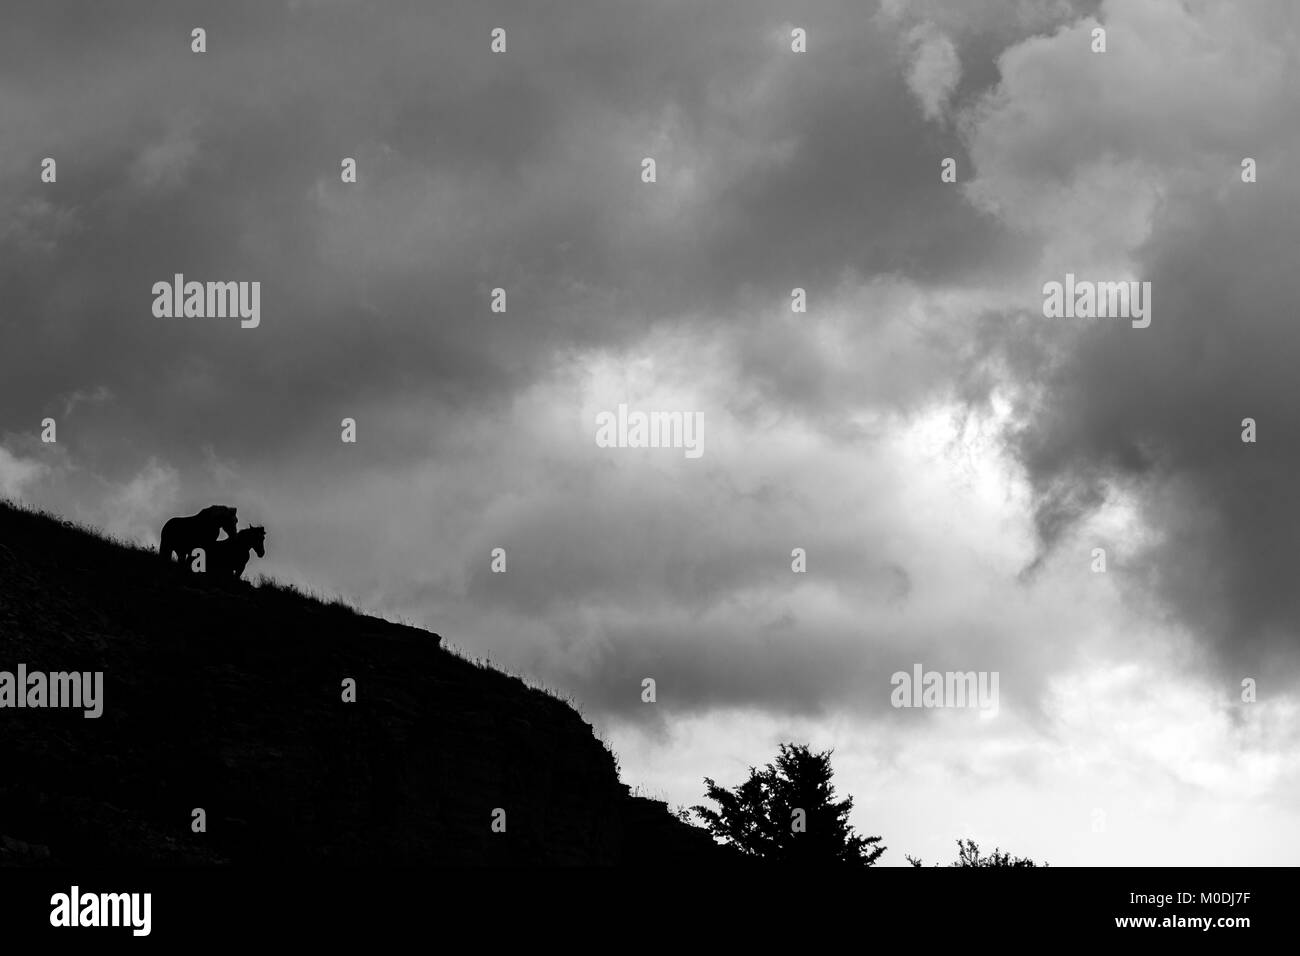 La silhouette d'un couple de chevaux sur une falaise sur la montagne Mt.Subasio (Ombrie, Italie), contre un ciel nuageux Banque D'Images